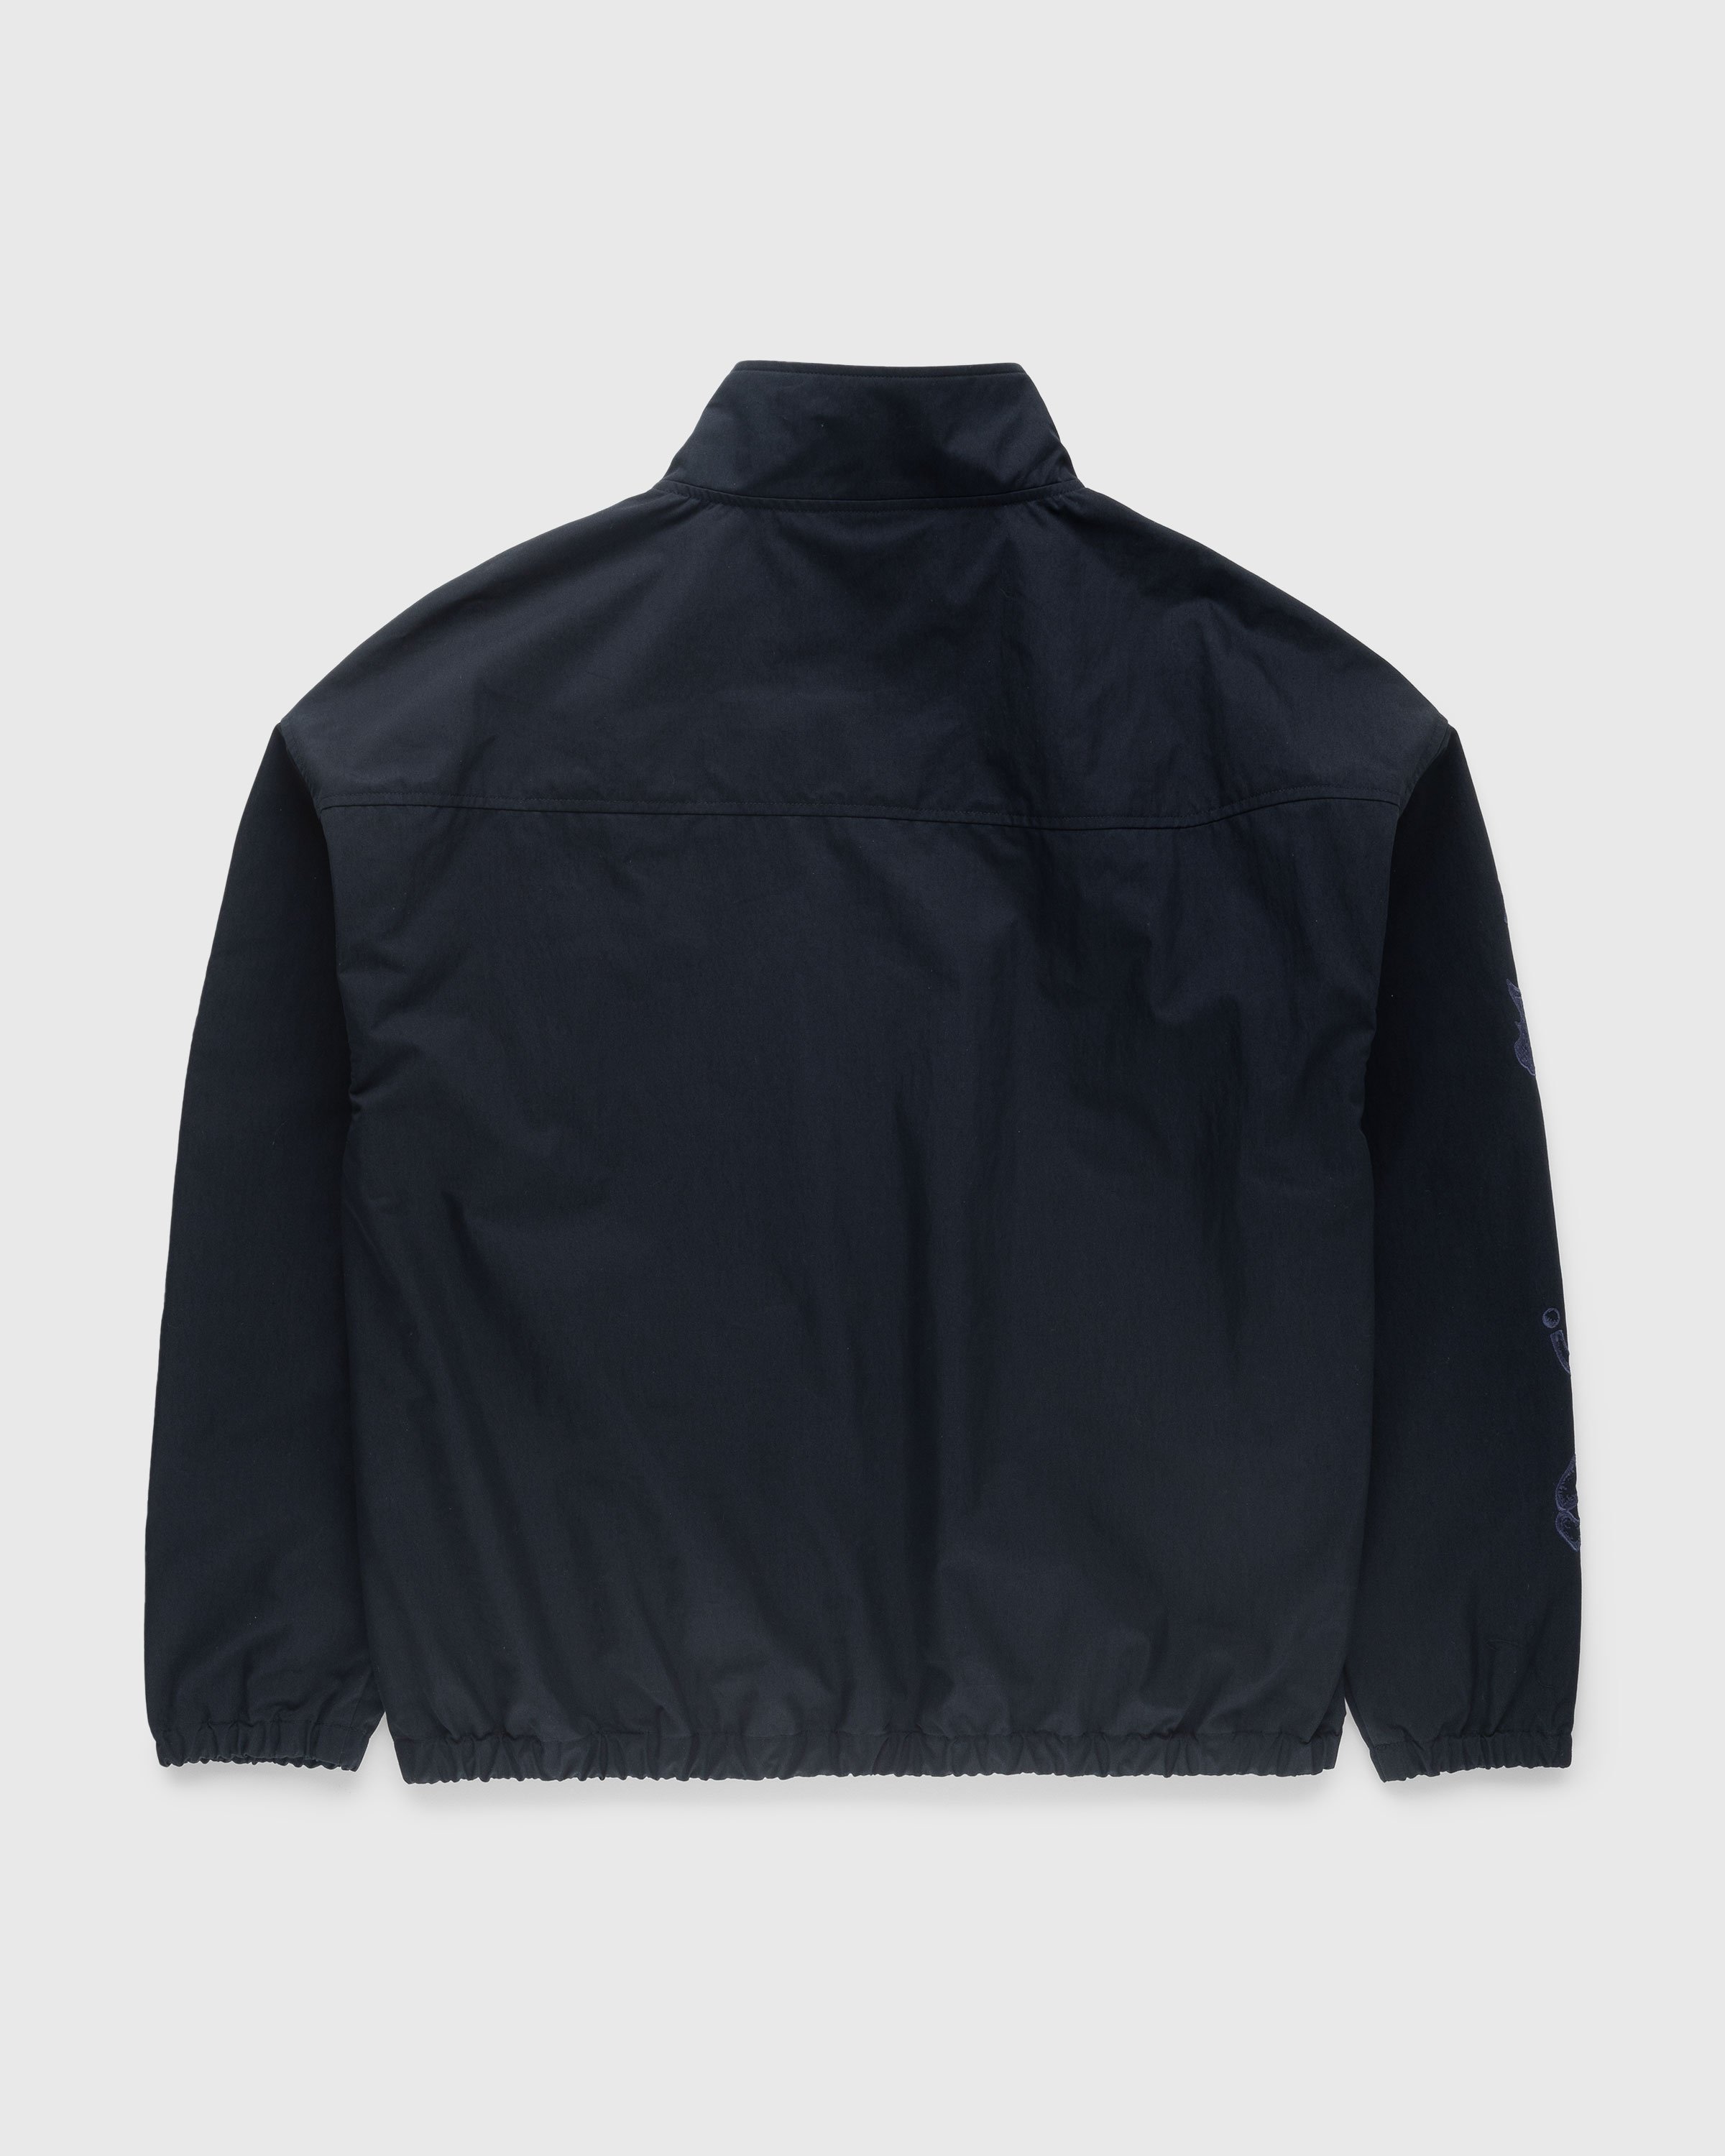 NTS x Highsnobiety - Brushed Nylon Track Jacket Navy - Clothing - Black - Image 2